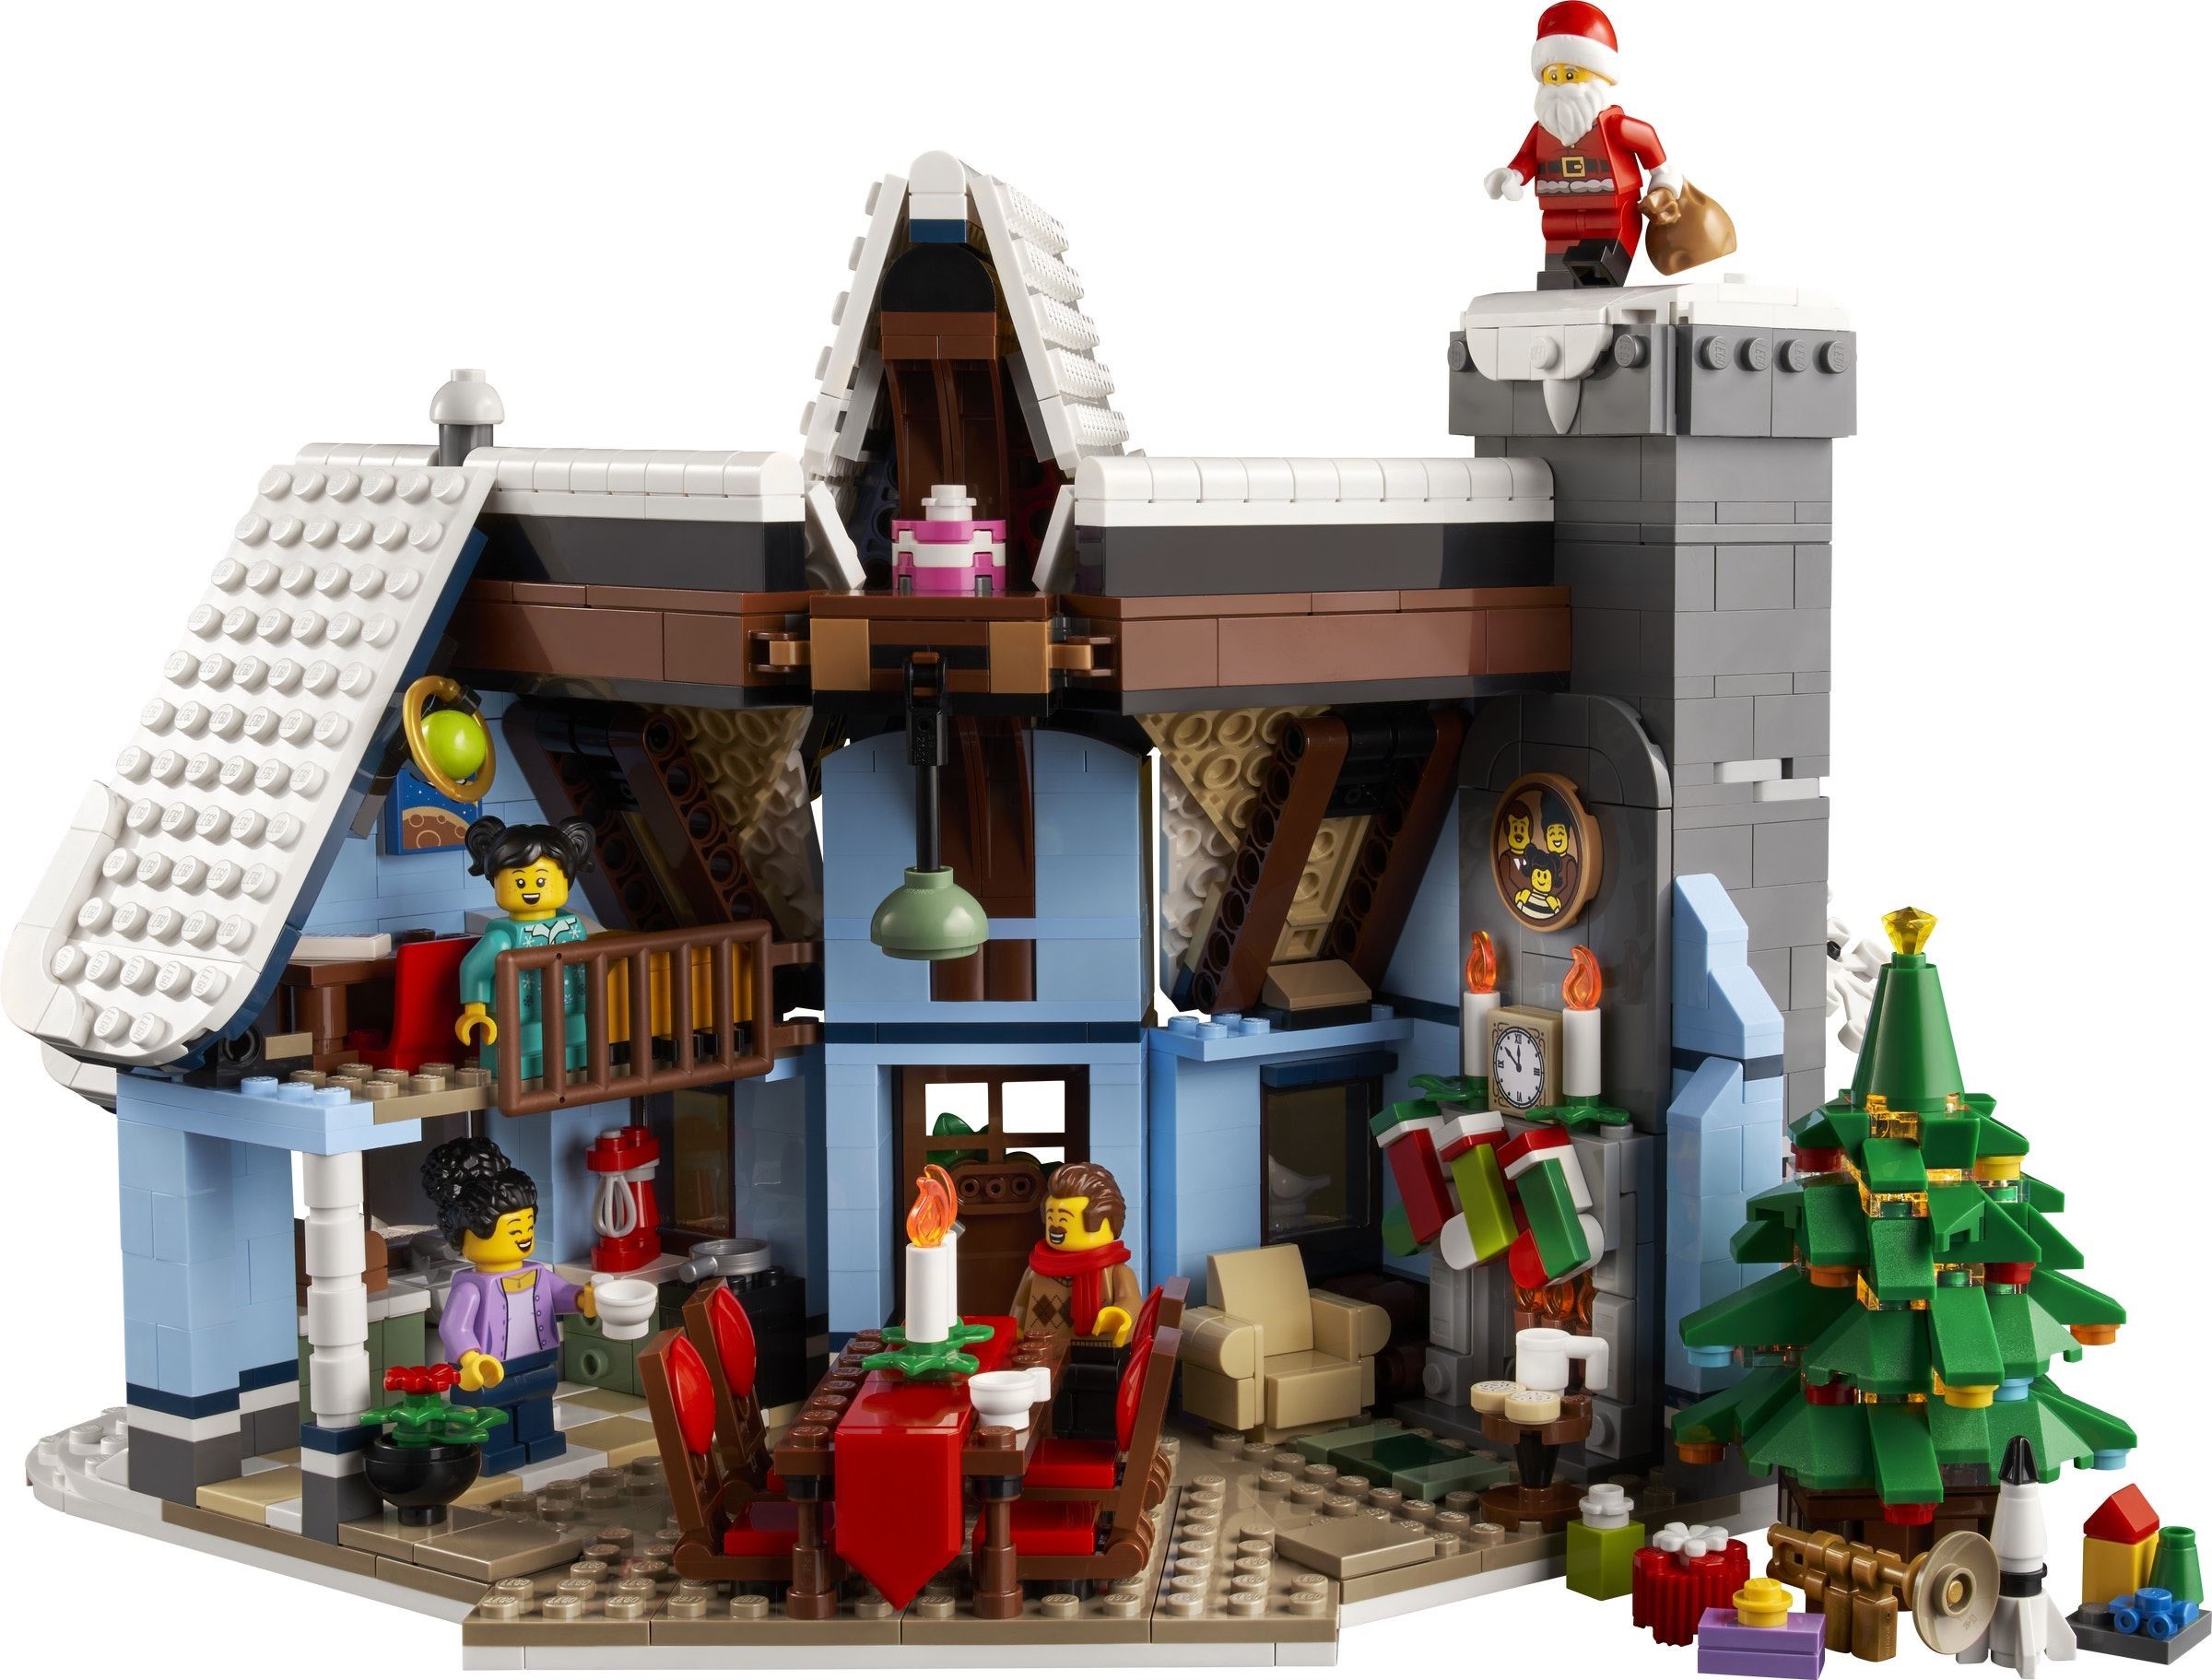 LEGO 10293 Winter Village Santa’s Visit (Визит Санты в Зимнюю деревню)